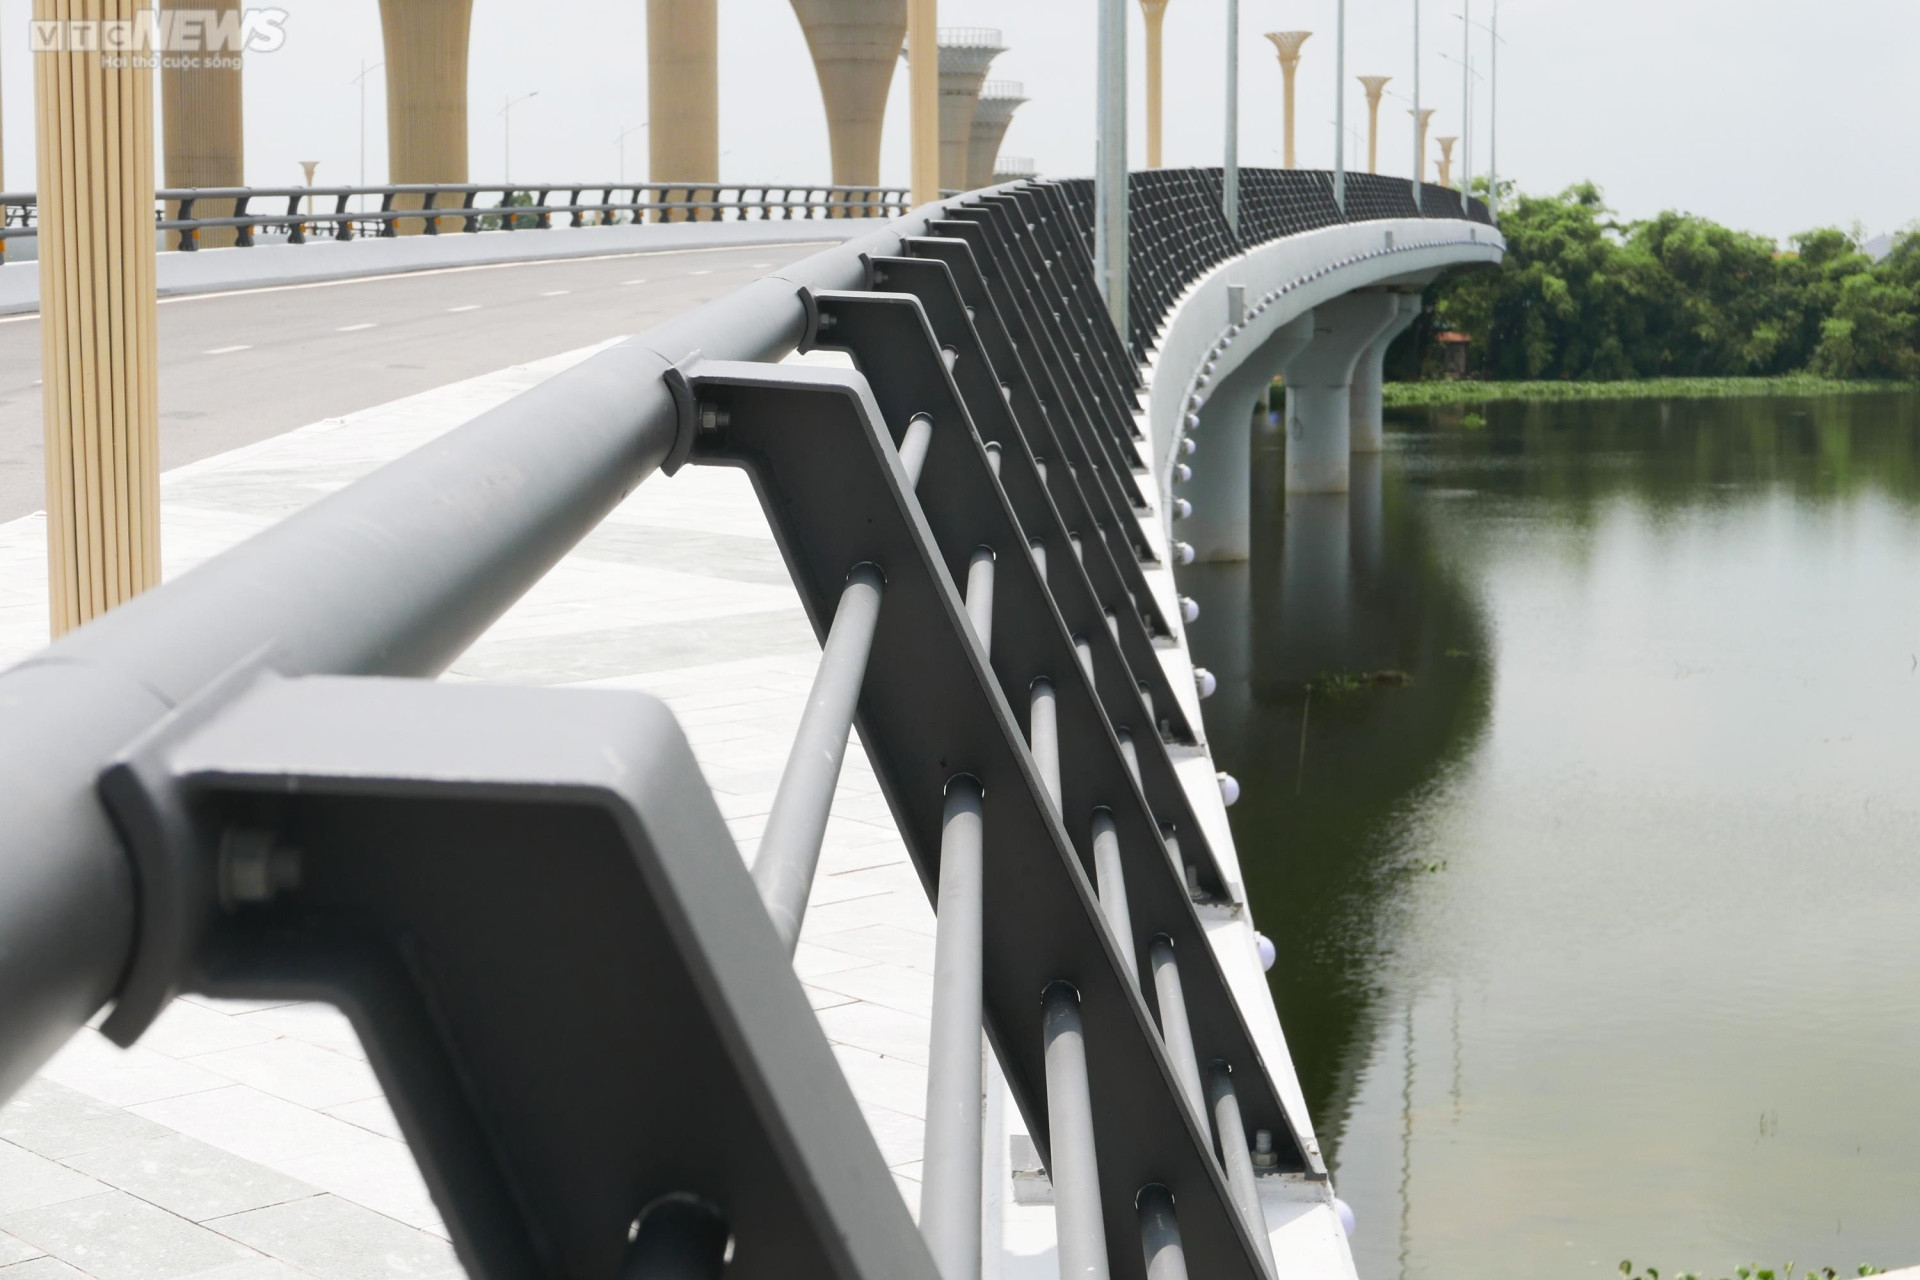 Ảnh: Độc đáo cây cầu kép hơn 600 tỷ đồng vượt đầm ở Vĩnh Phúc - 12